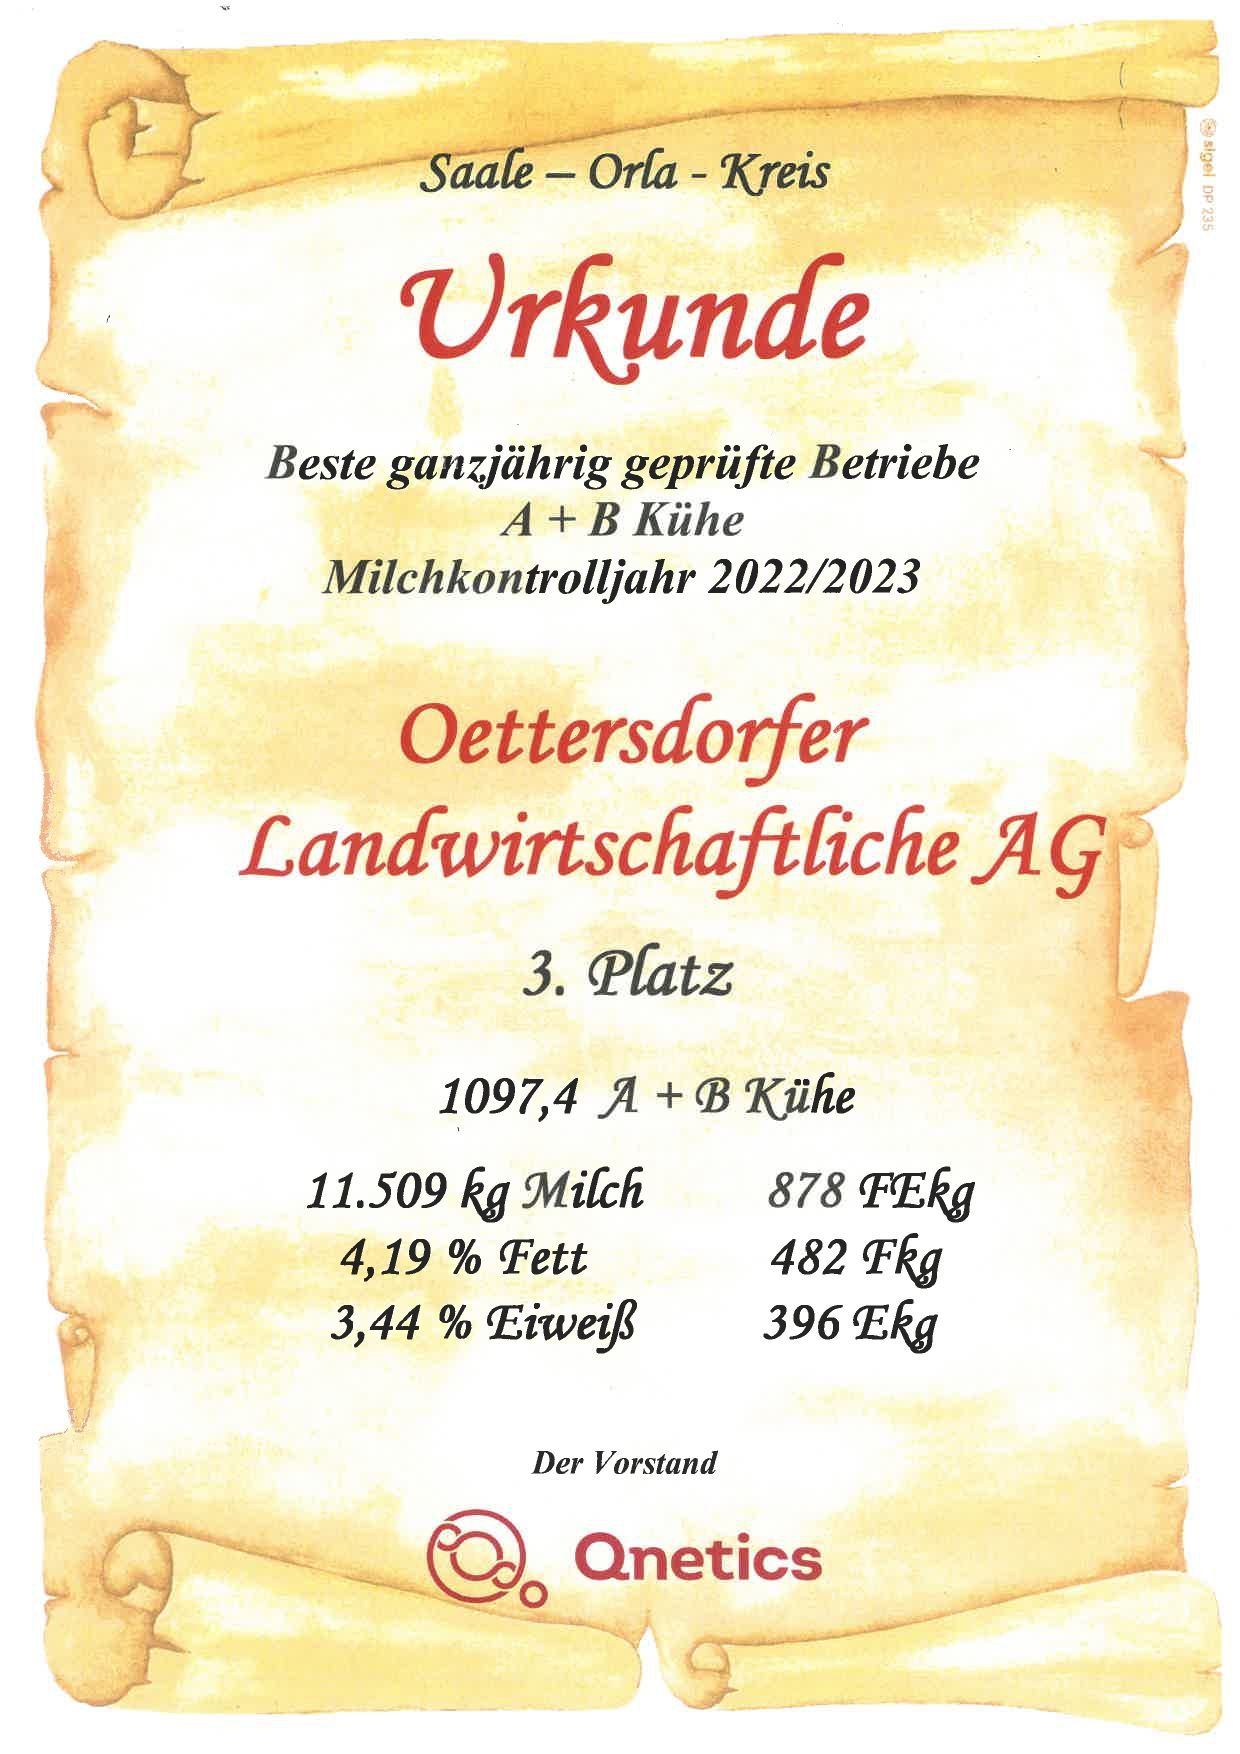 ottersdorfer landwirtschaftliche ag - urkunde 3. platz